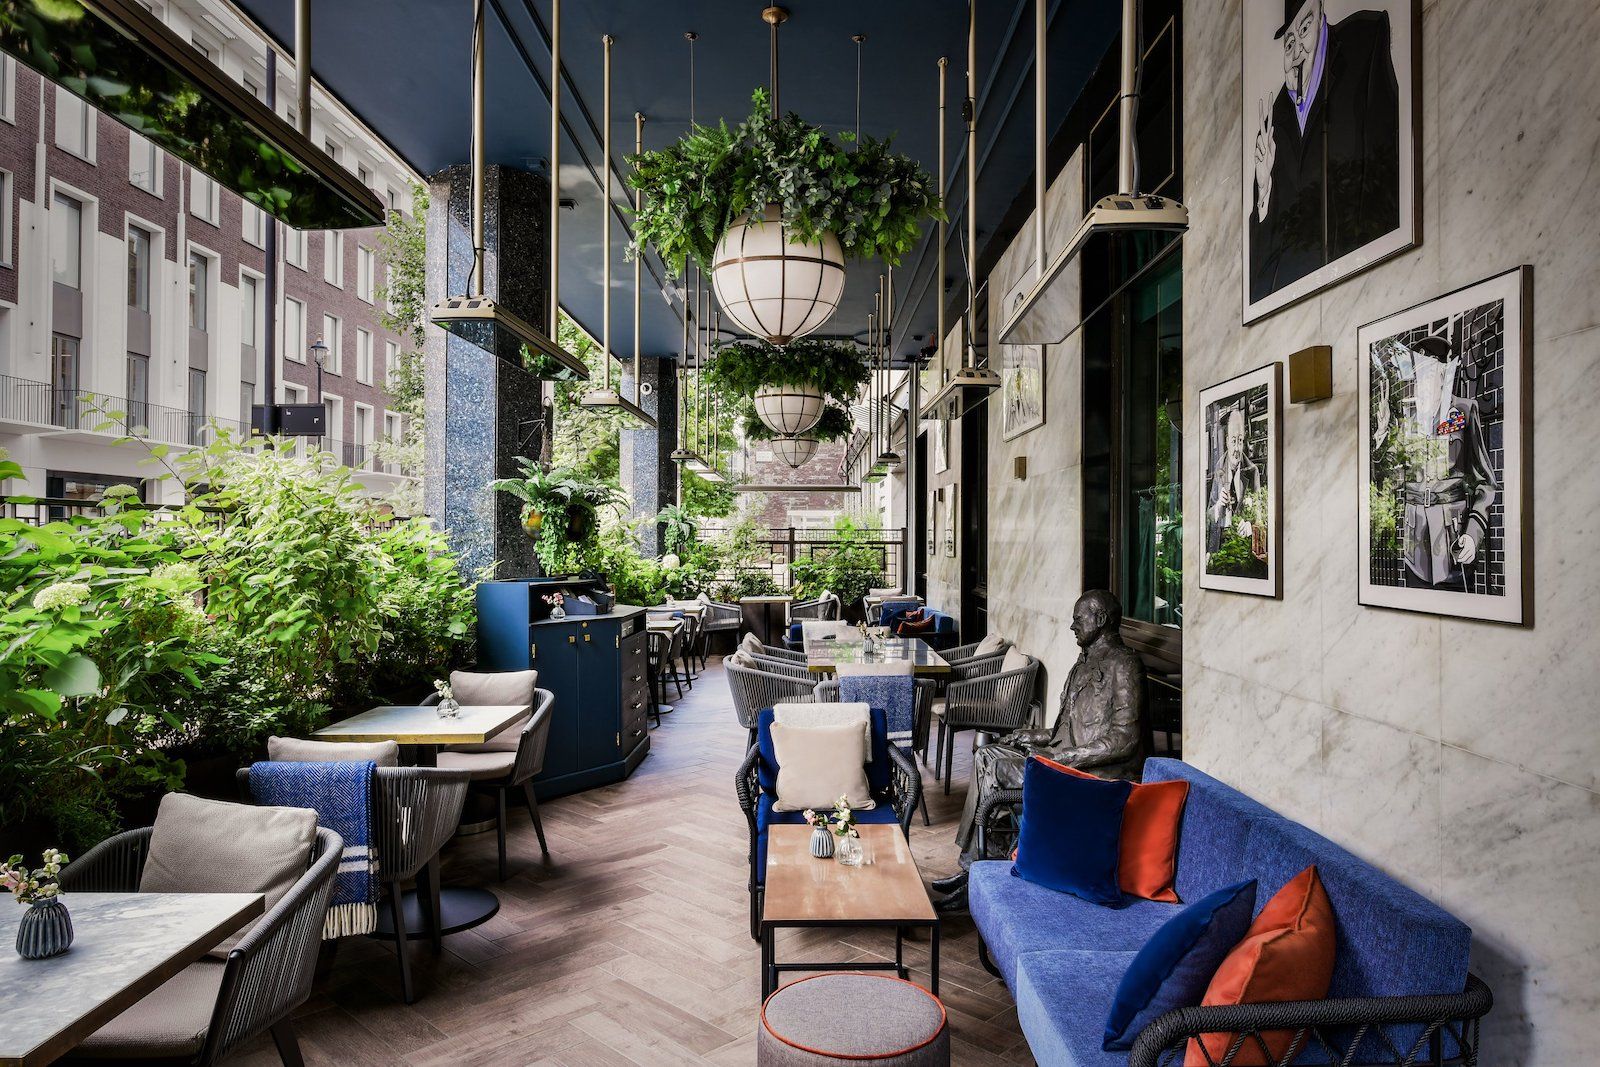 The Churchill Bar & Terrace – Bars in Marylebone